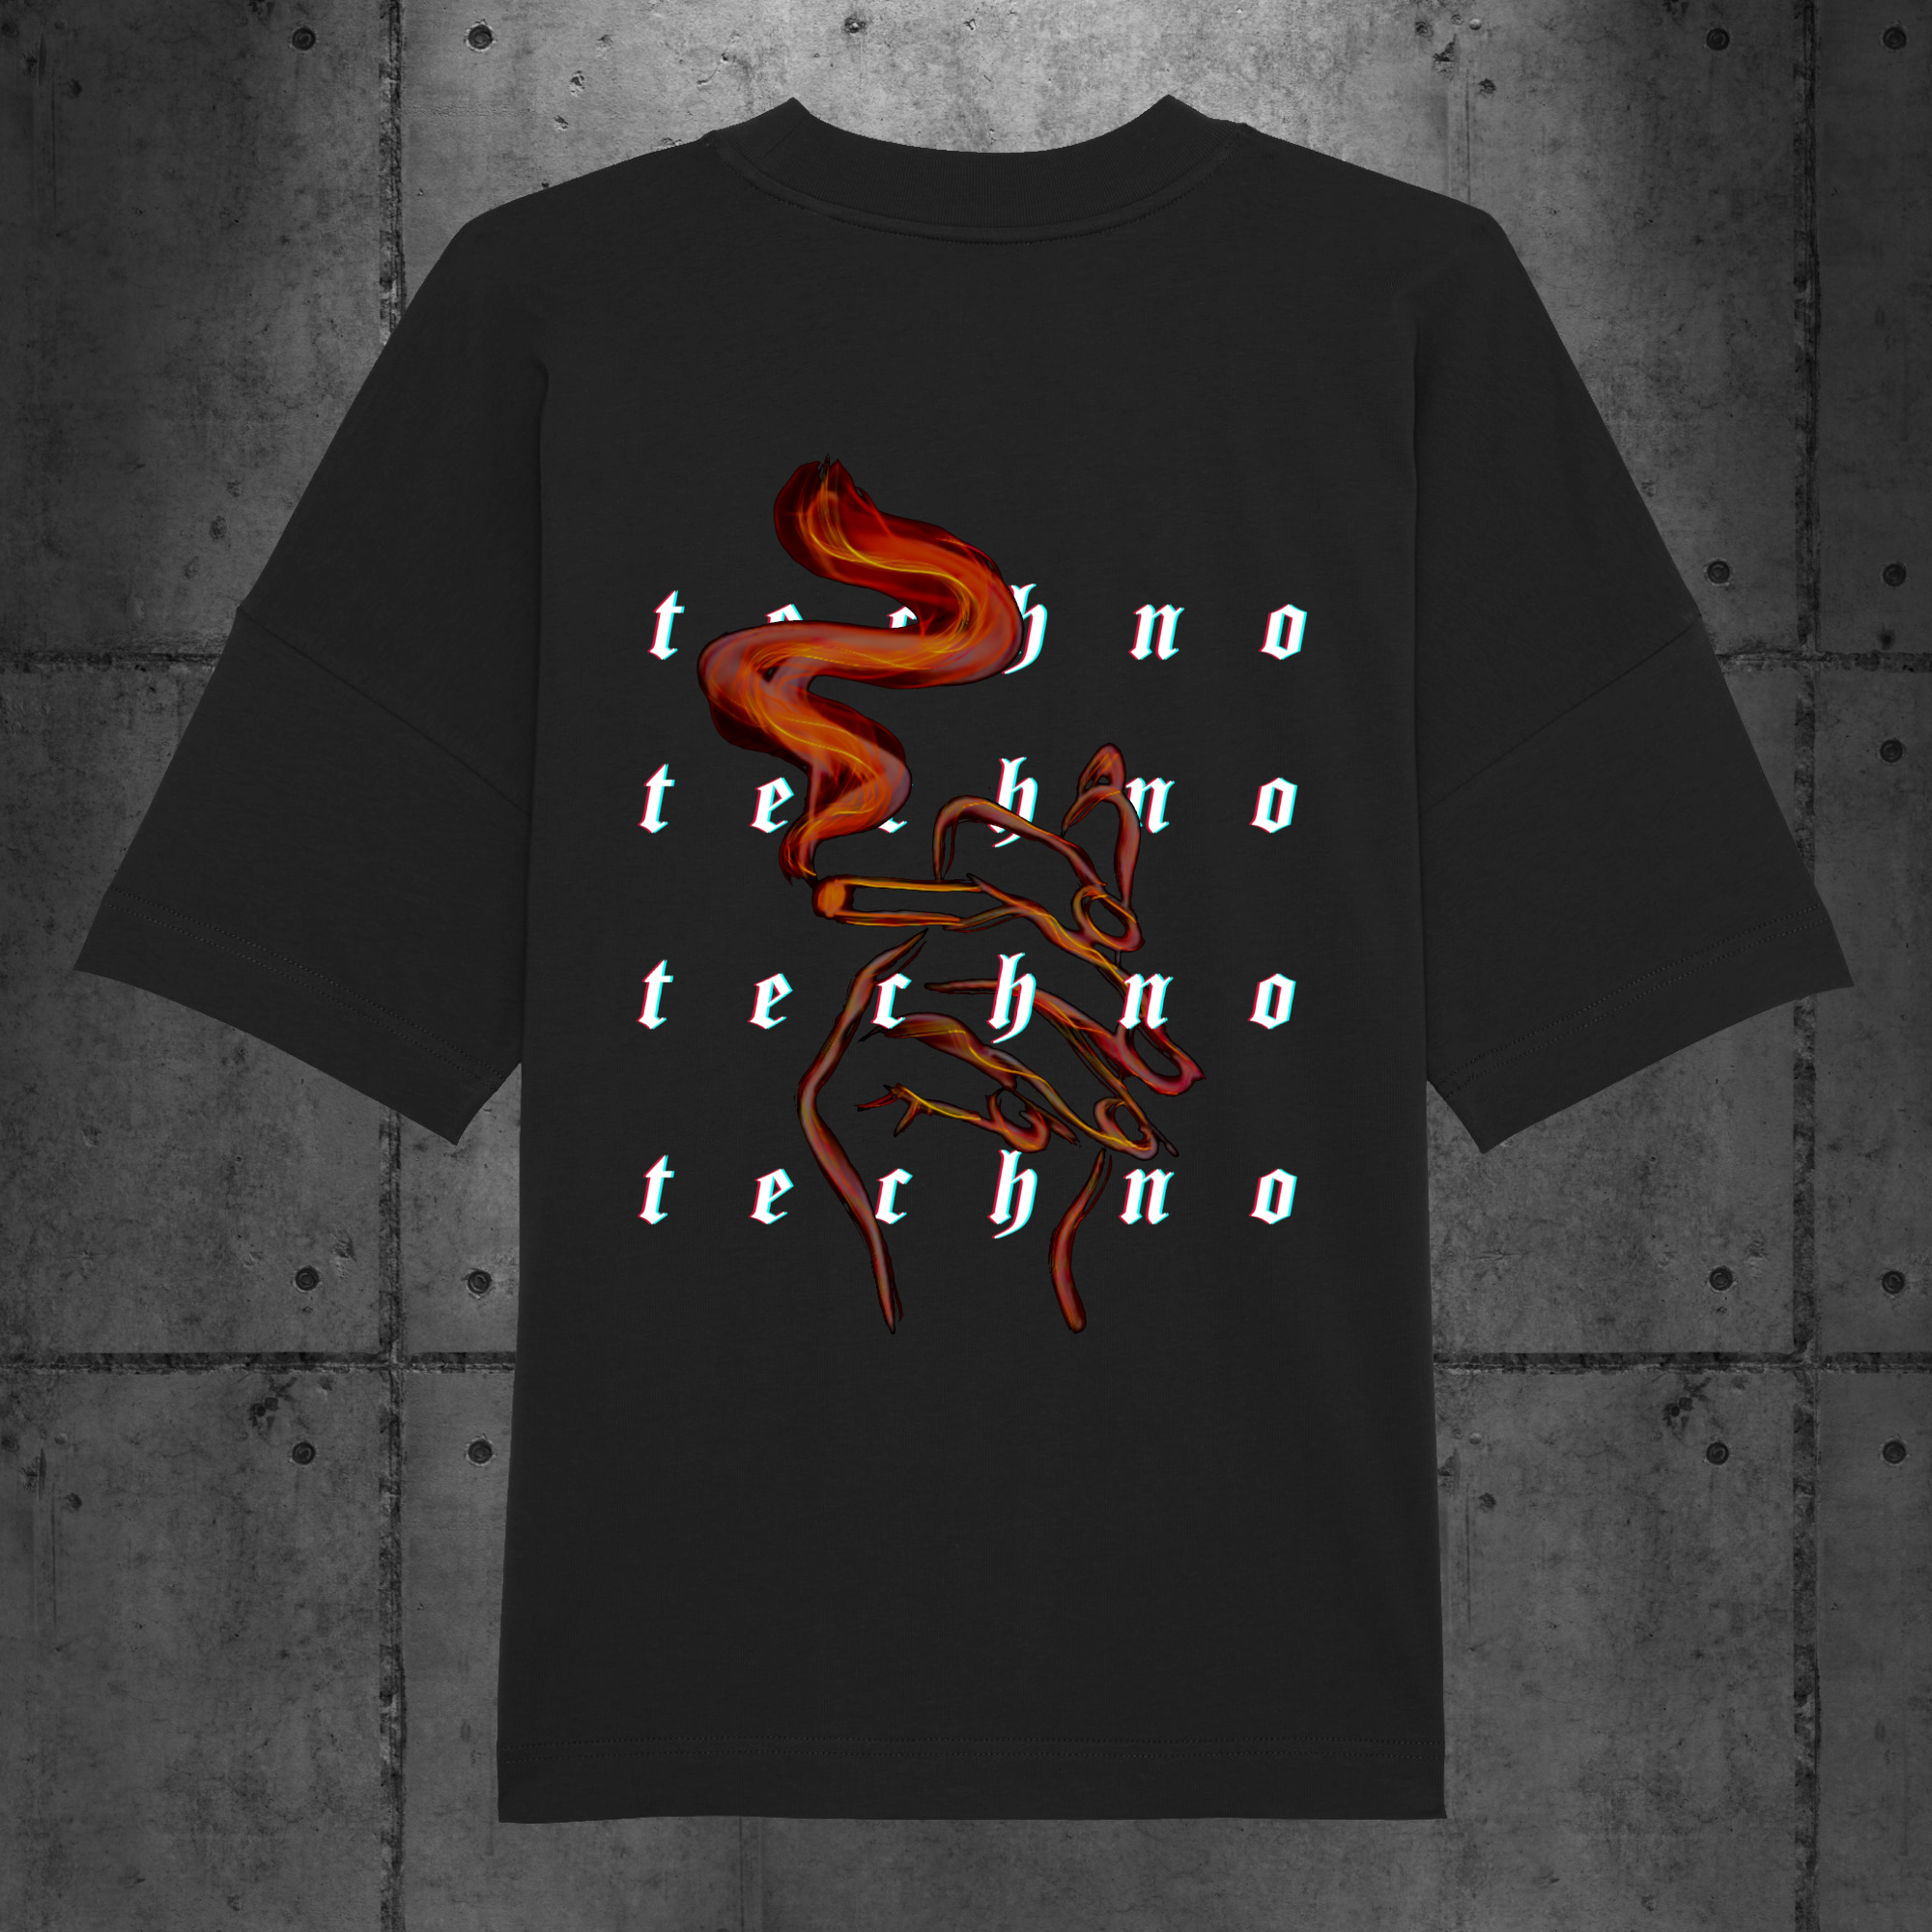 Techno Smoke Oversized T-Shirt